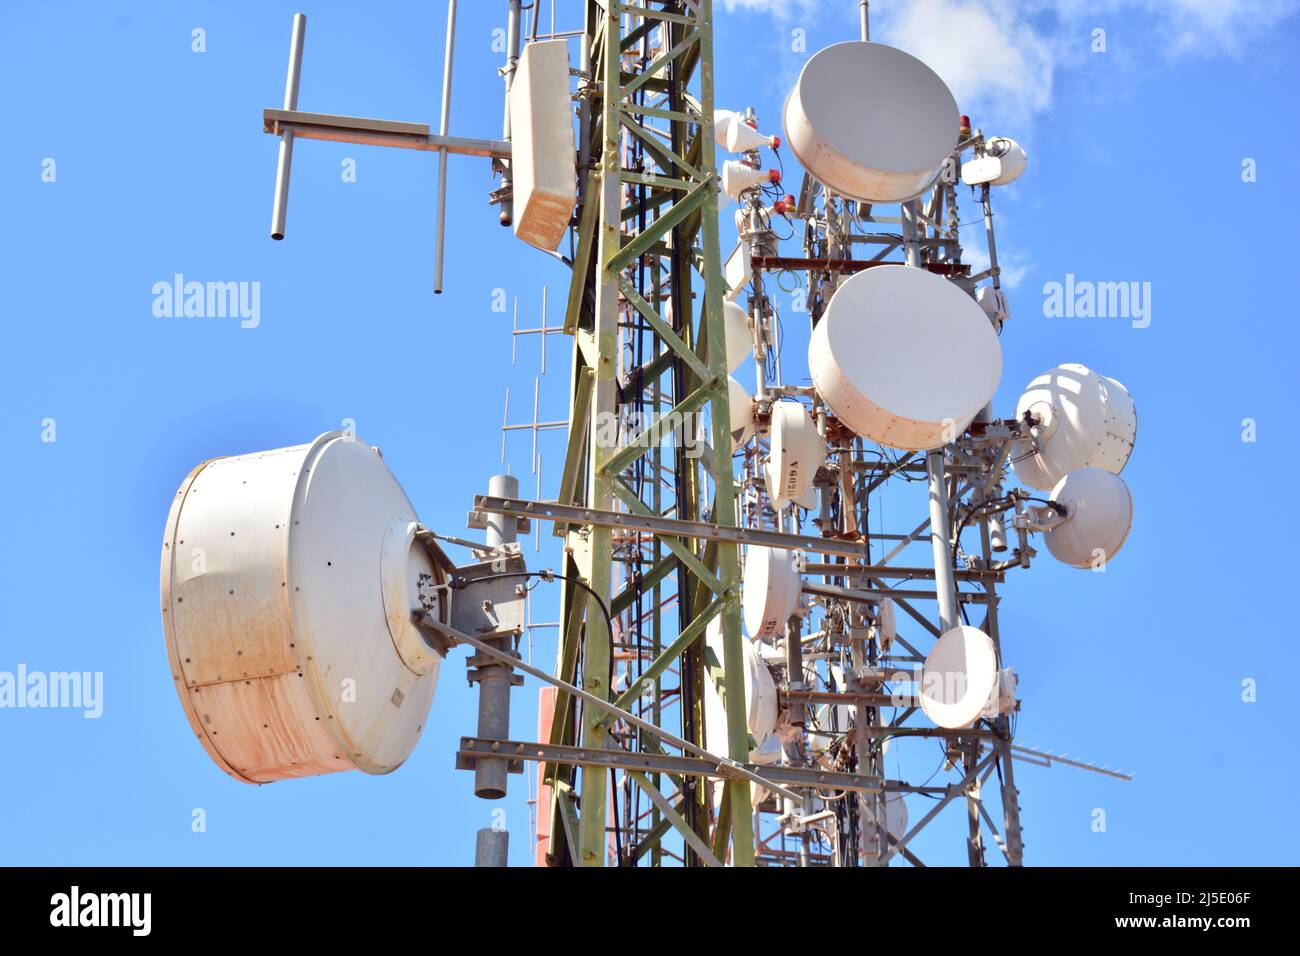 Detalle de una torre de telecomunicaciones Stock Photo